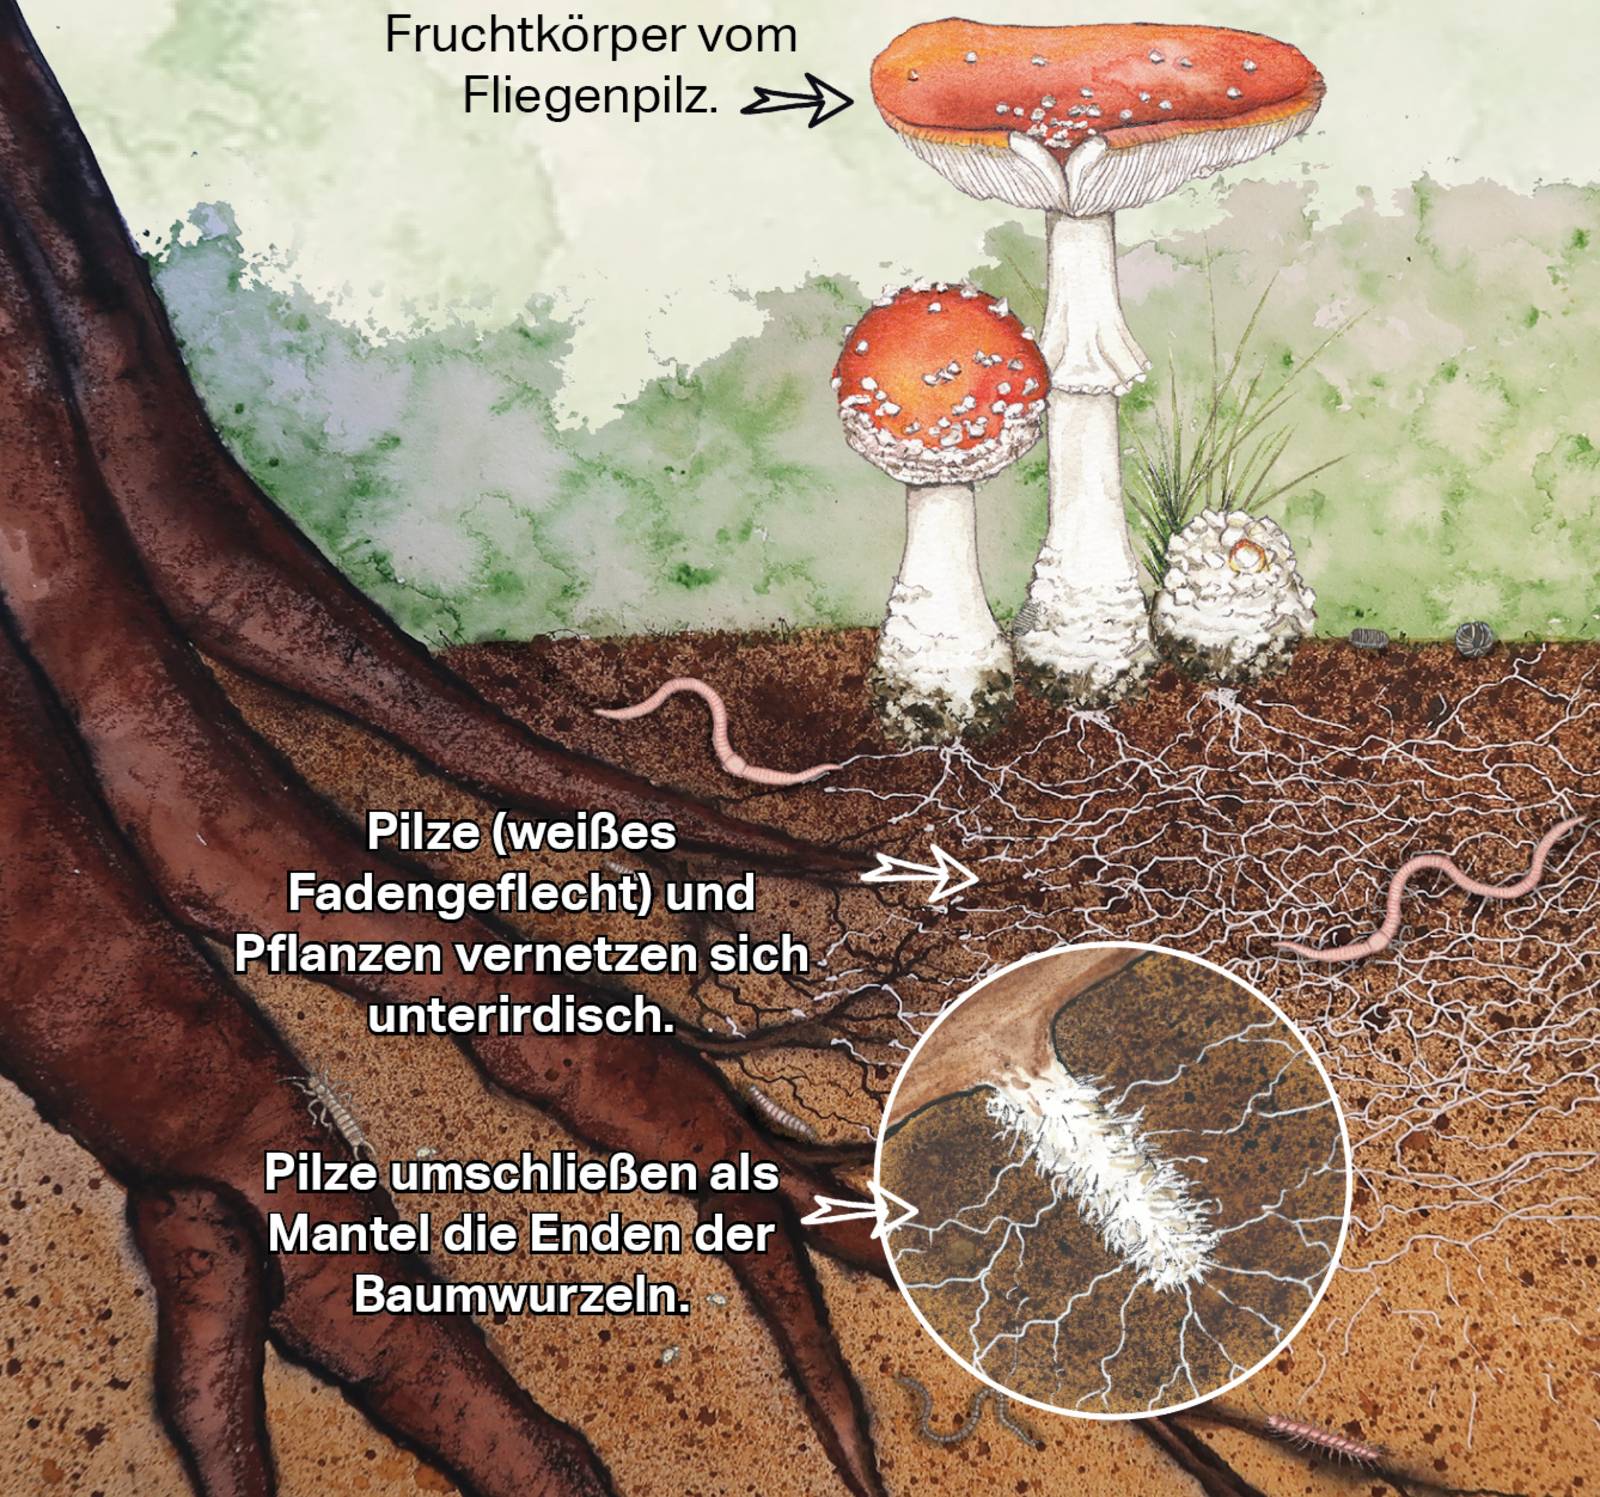 Zeichnung von Pilzen und Pflanzen, die durch Wurzelgeflecht miteinander verbunden sind.